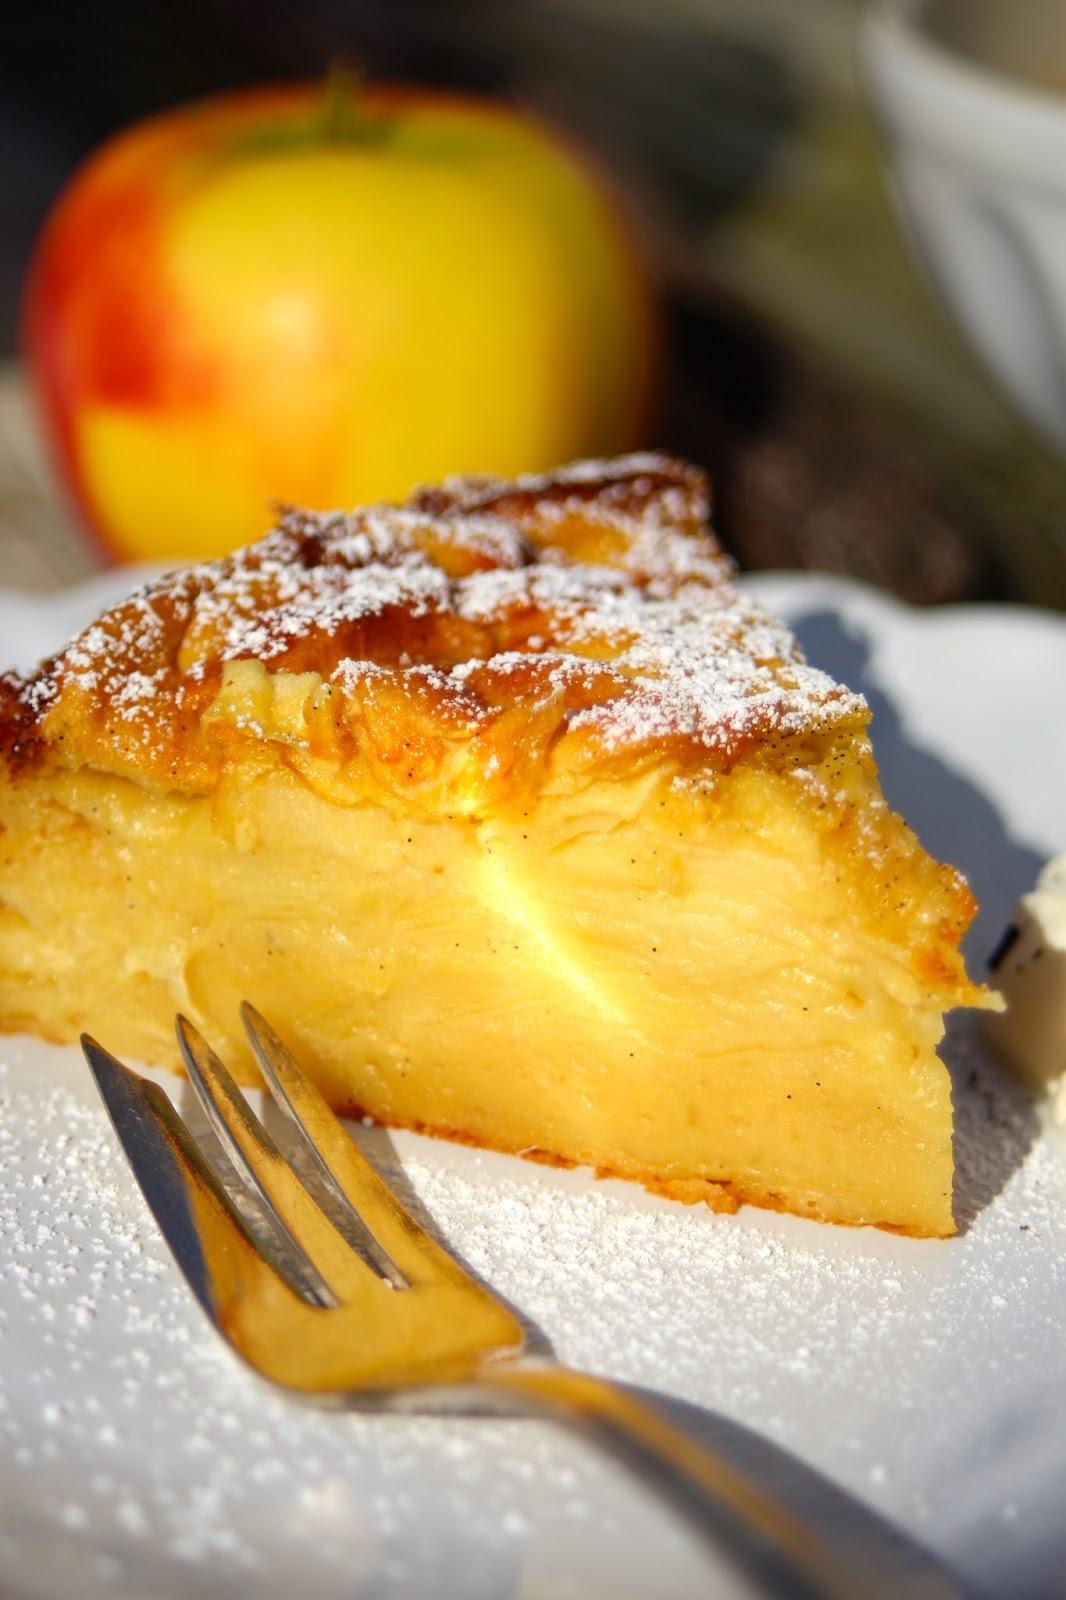 Paulas Frauchen: Apfel‑Vanille-Superkuchen